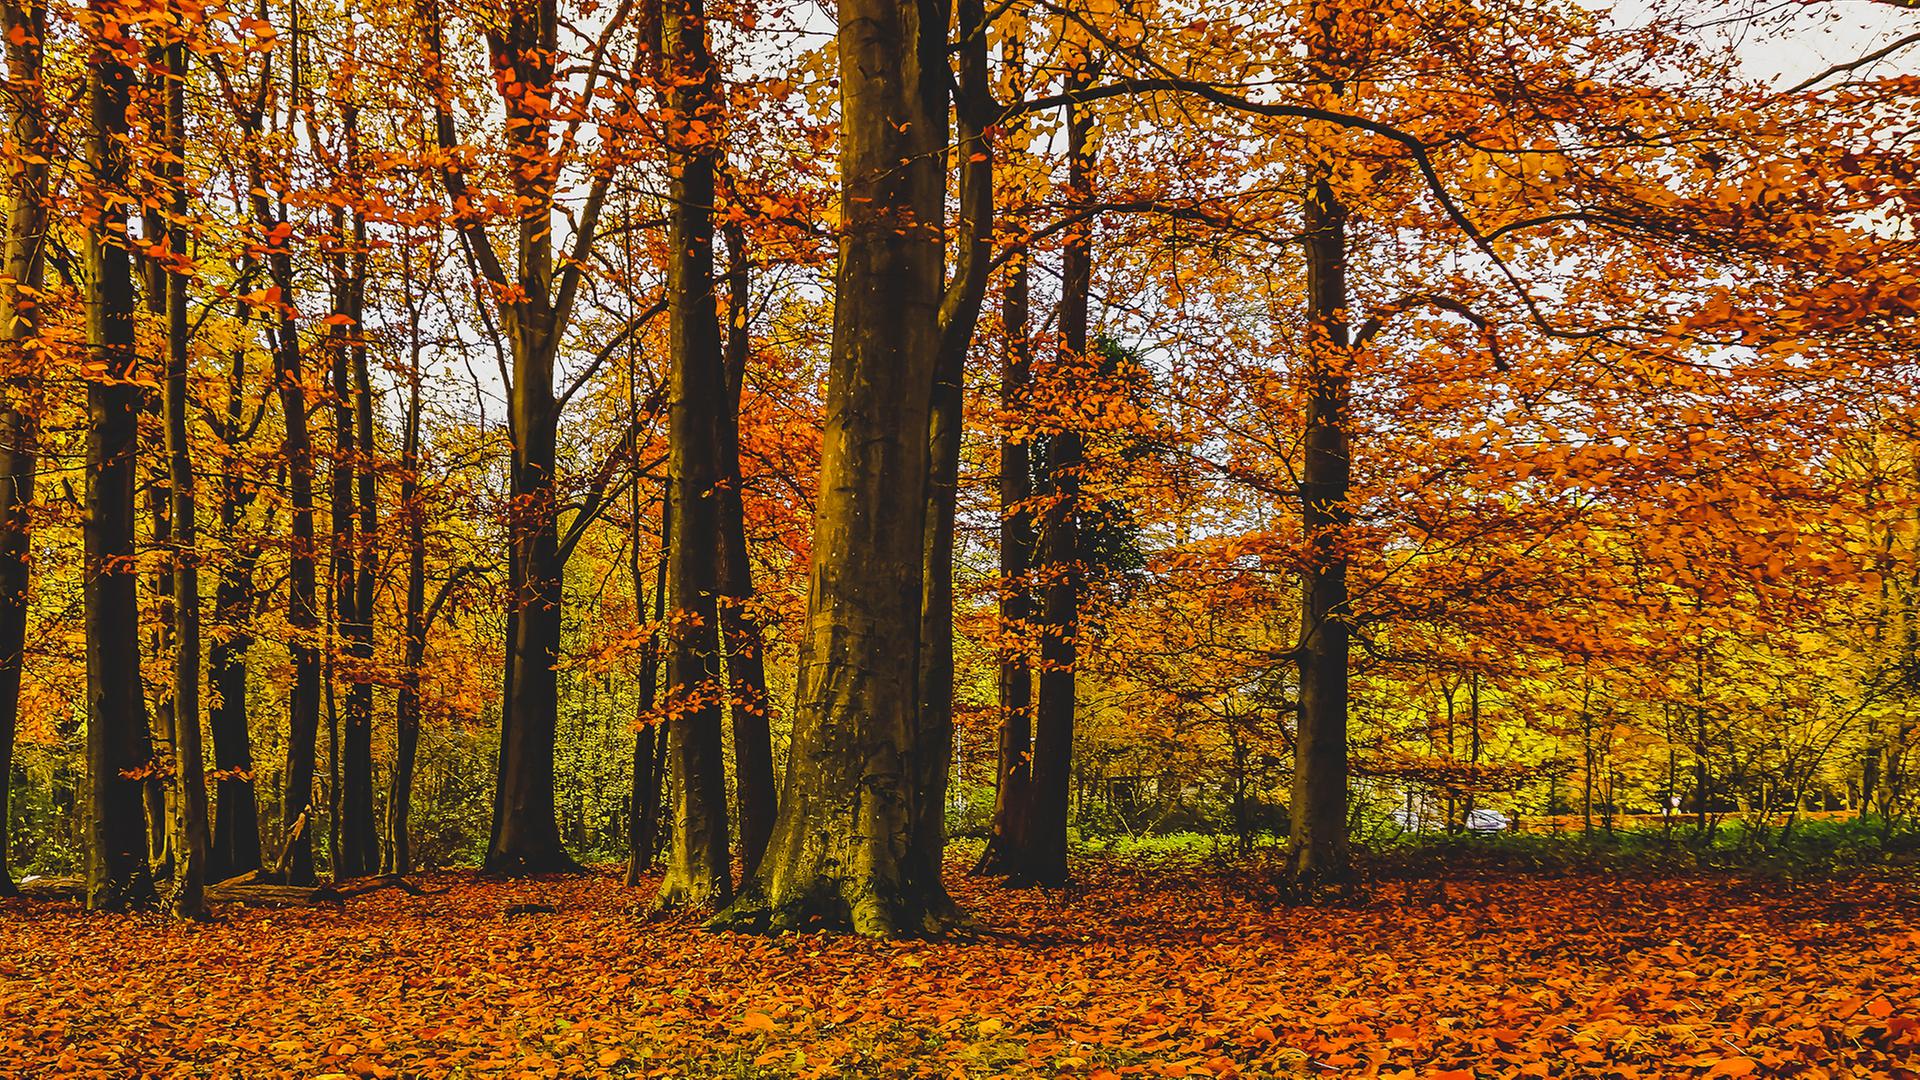 Laubwald, rot-orangene Blätter an Baumen und auf dem Boden